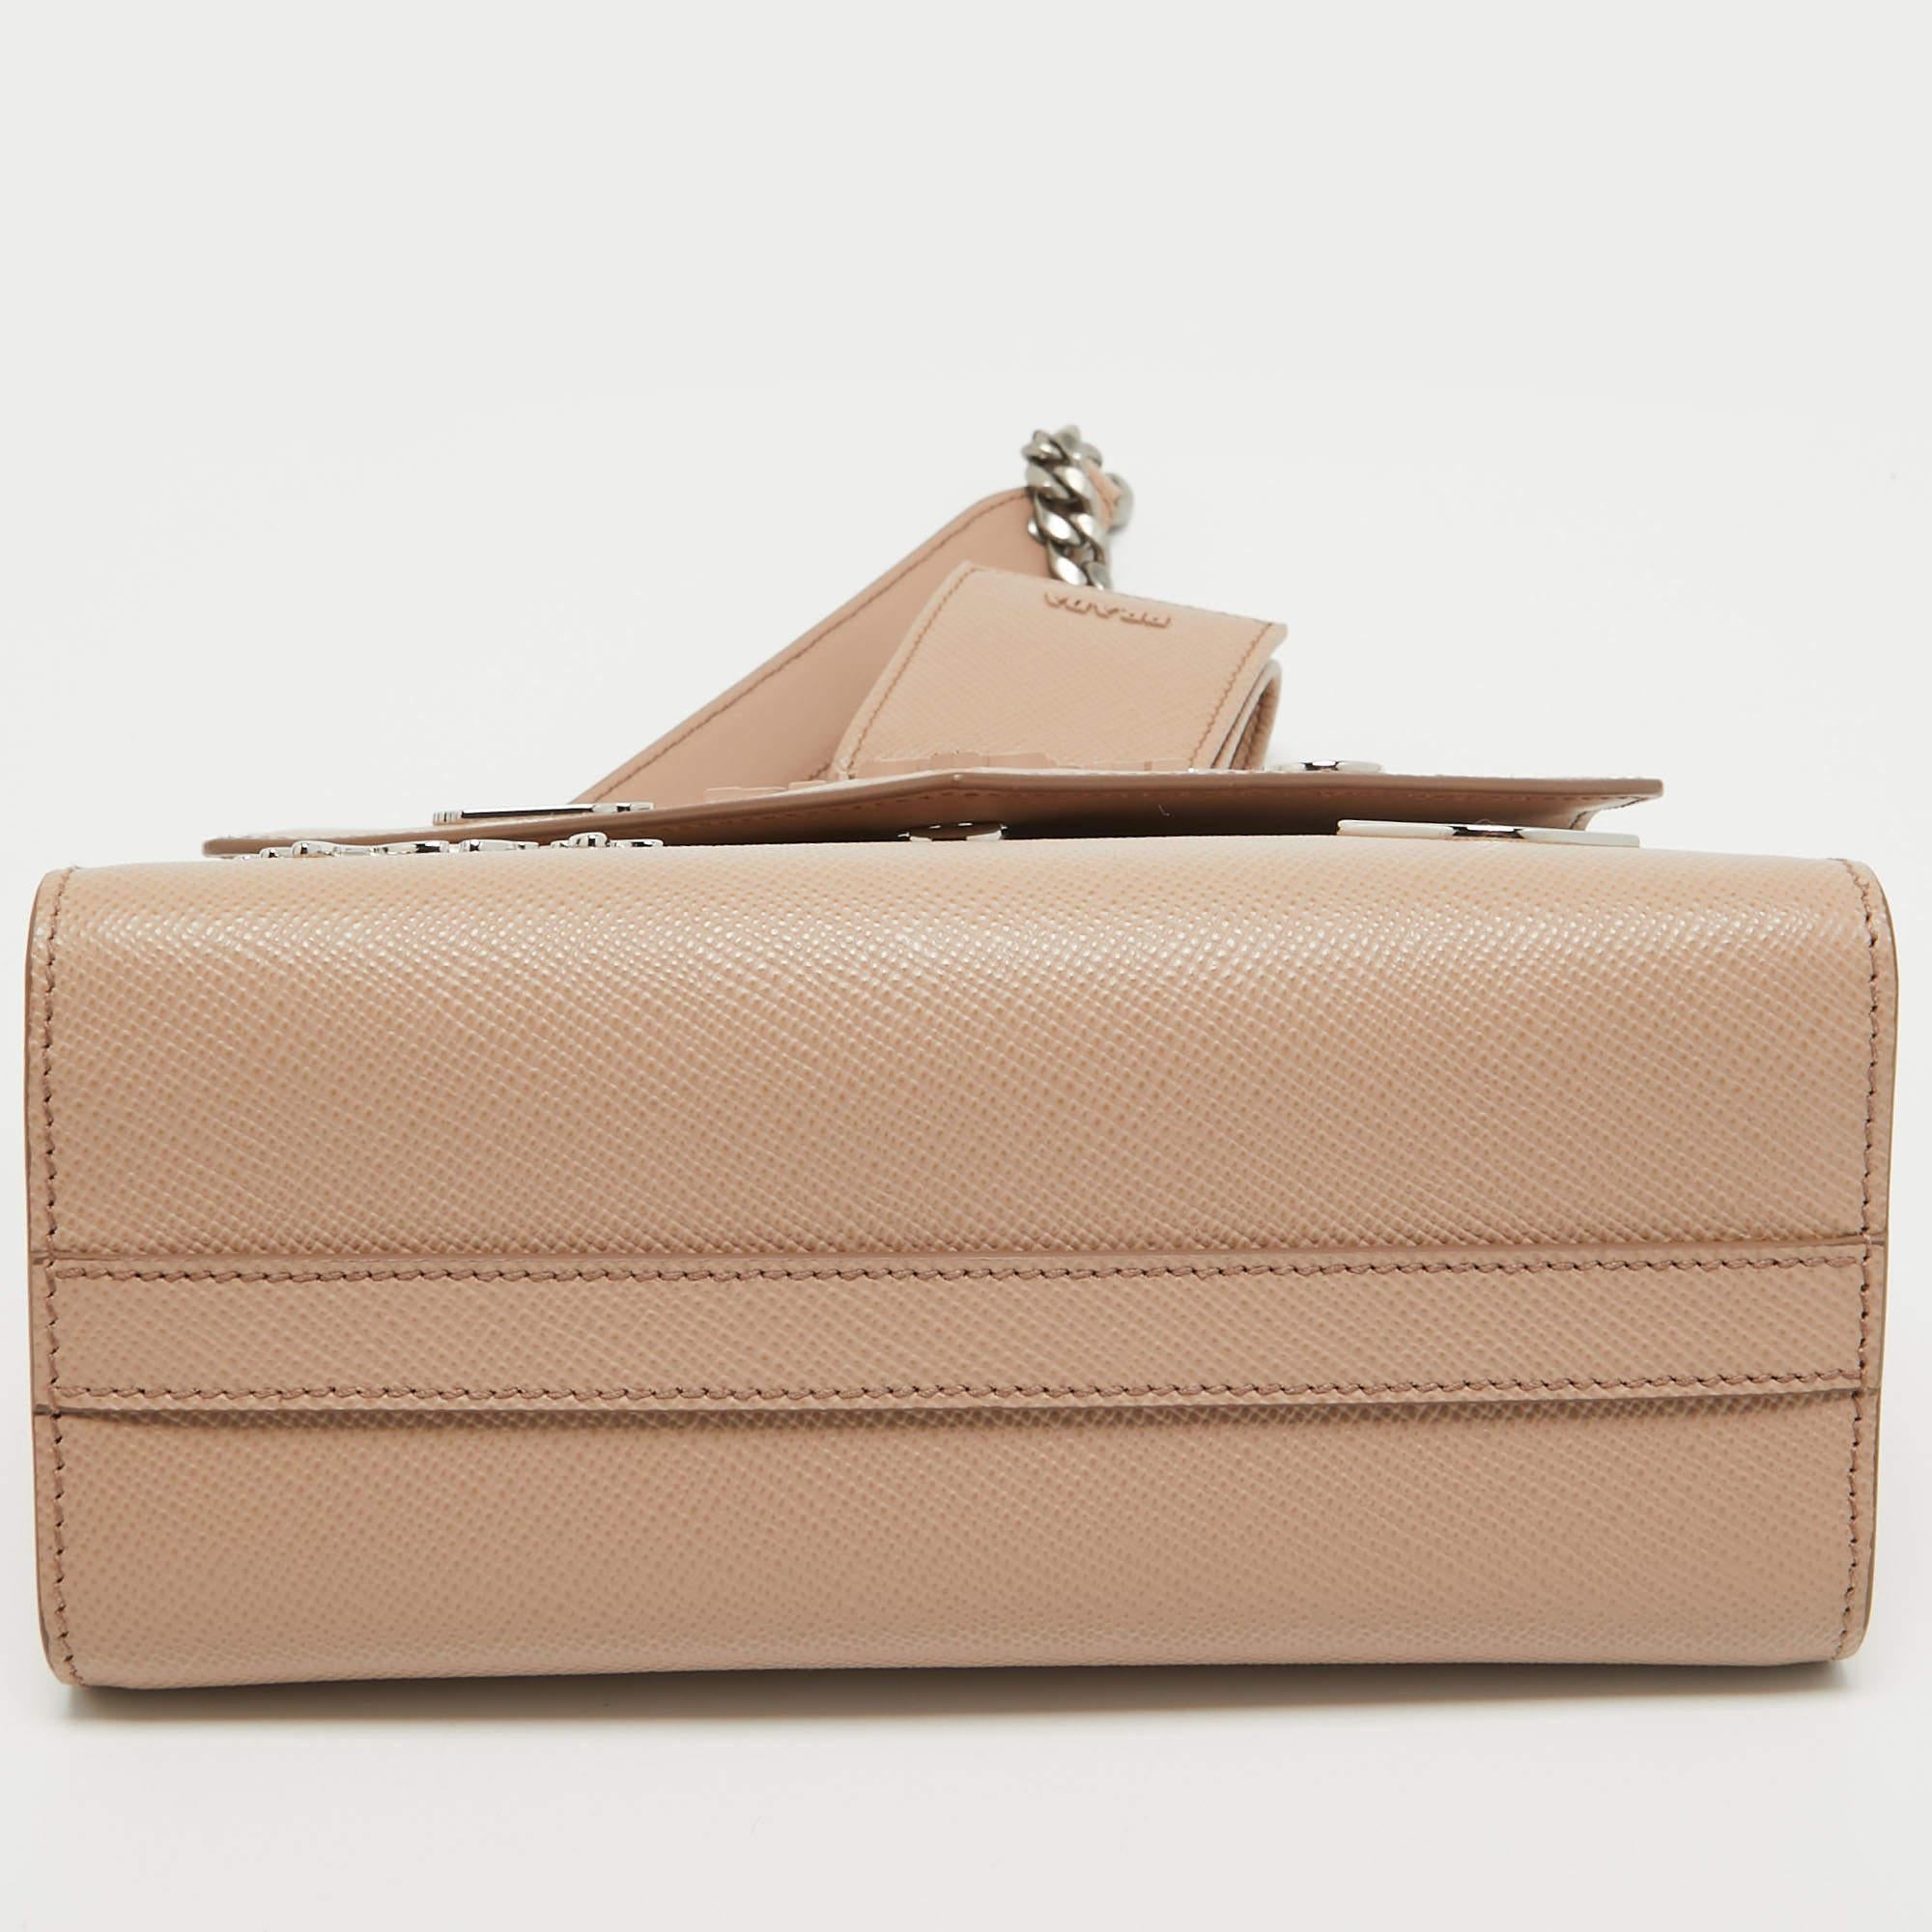 Prada Beige Saffiano Leather Small Monochrome Embellished Shoulder Bag 6